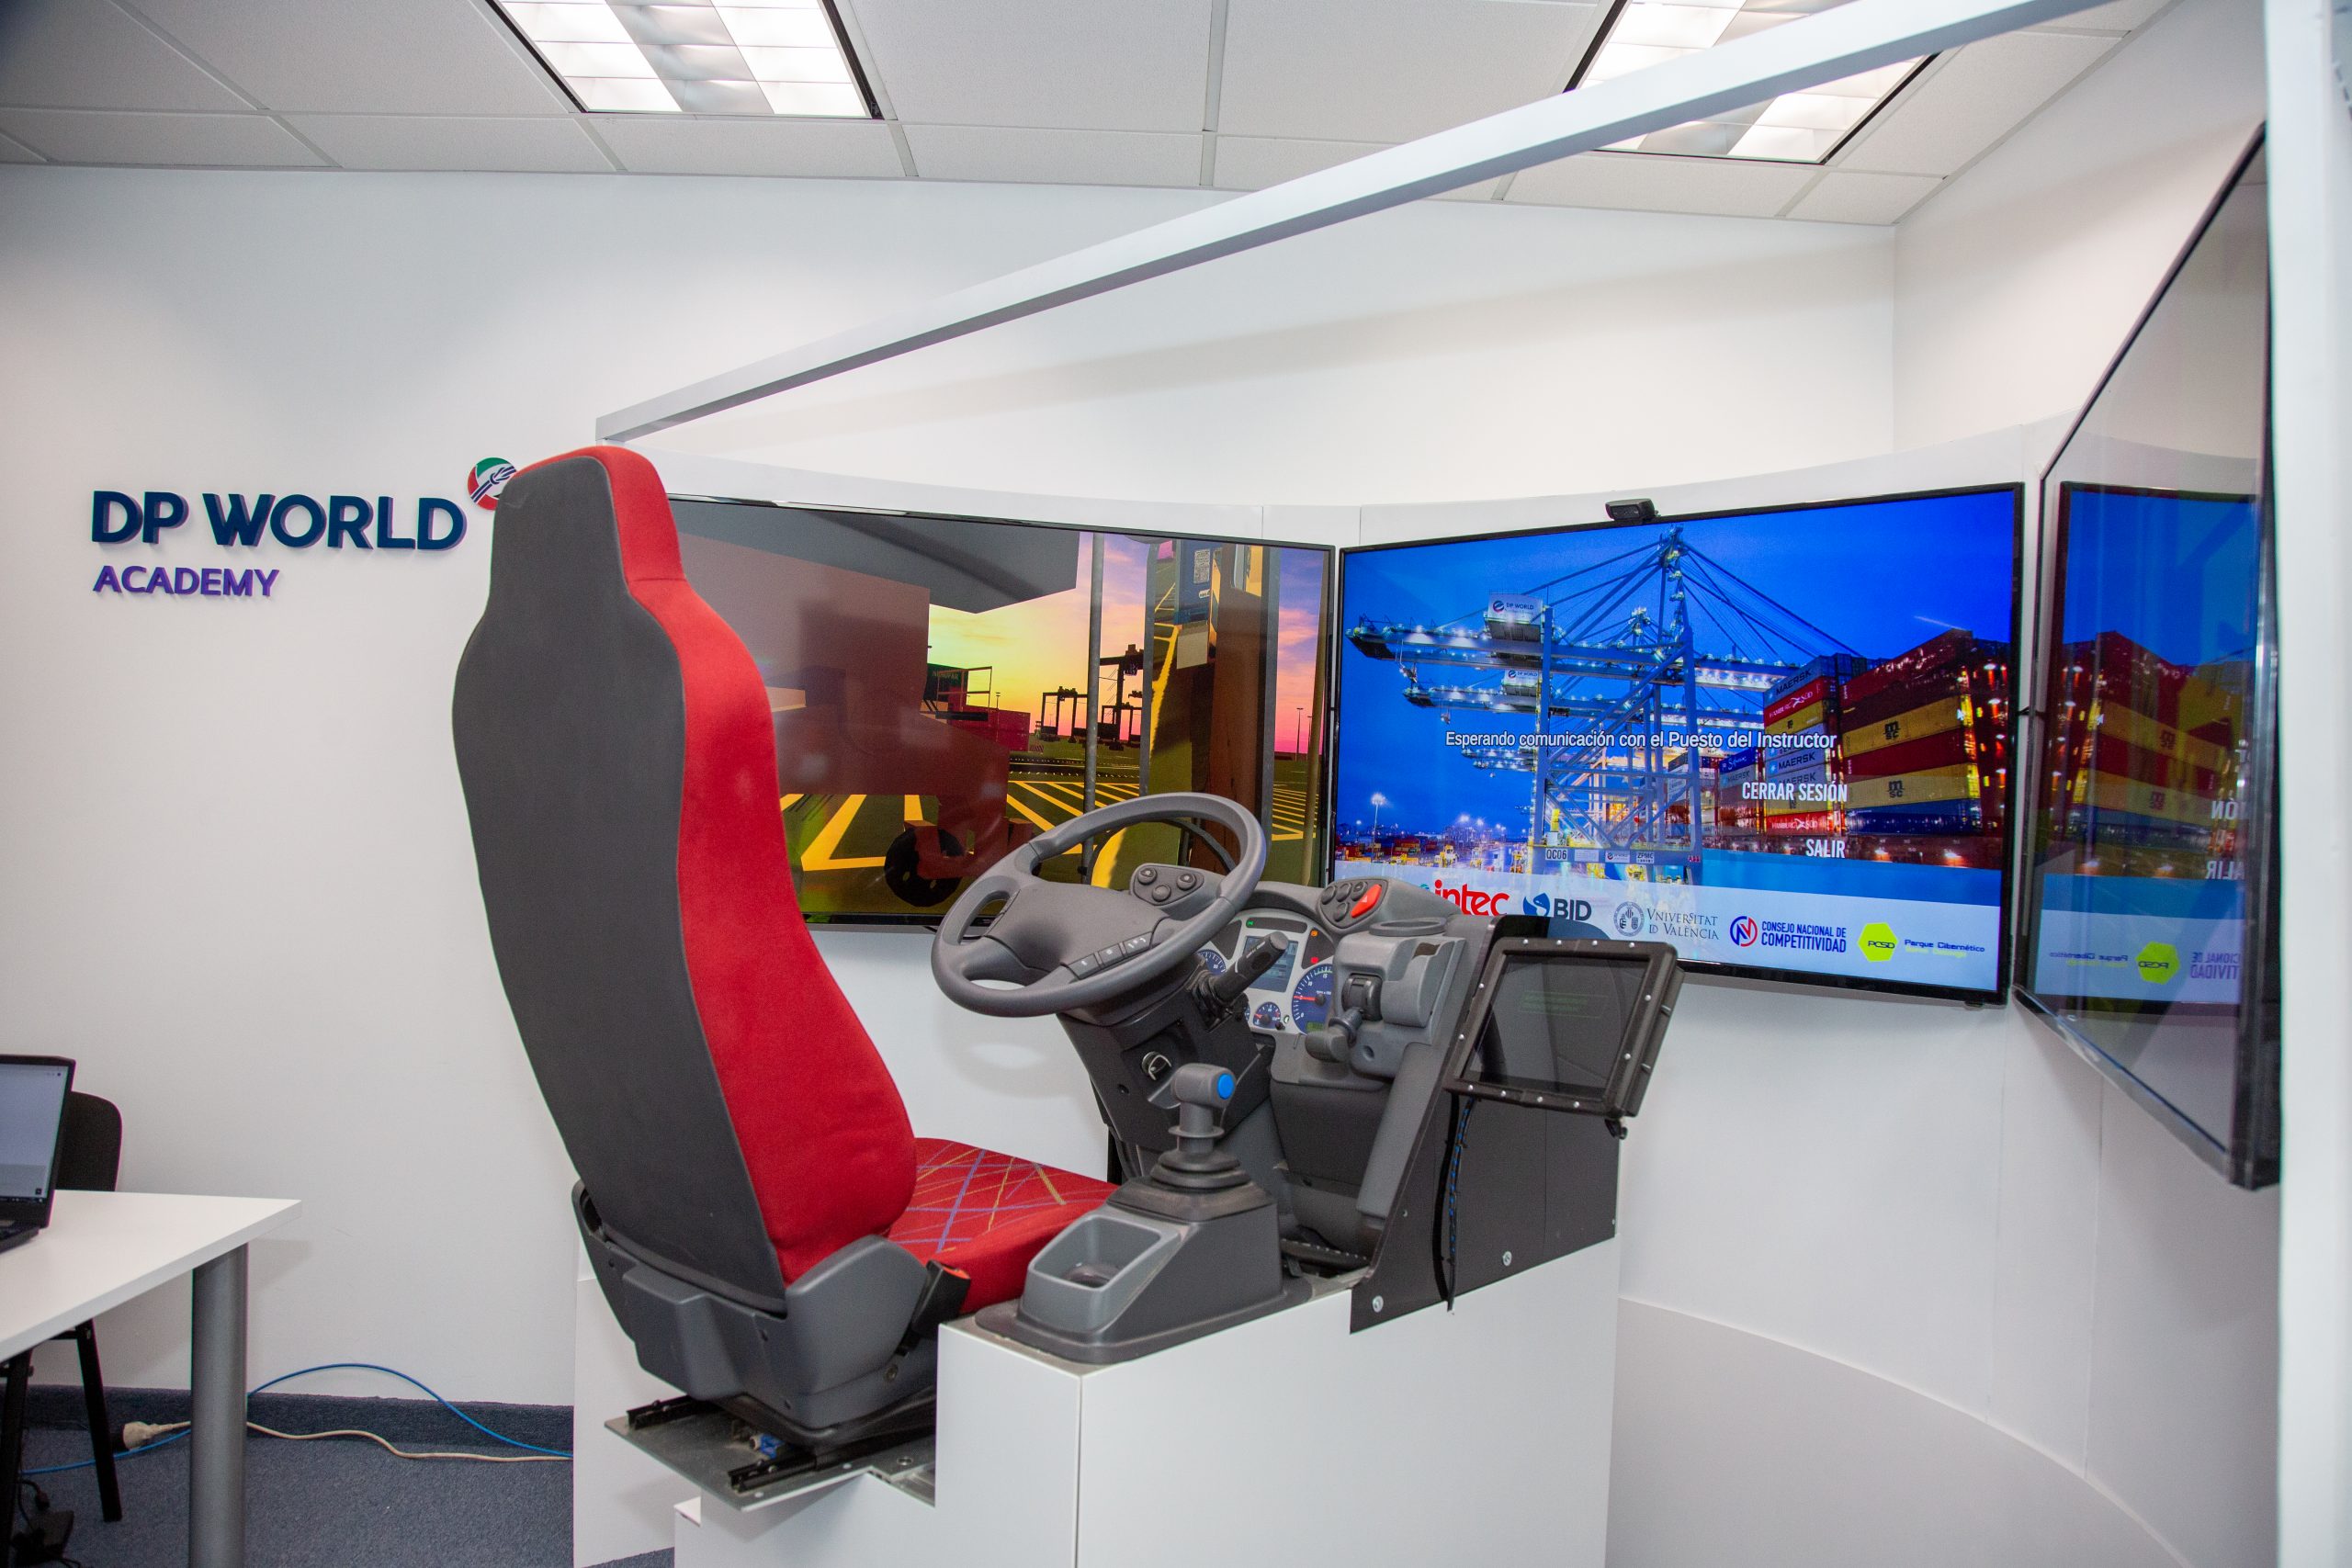 DP World implementa simulador de realidad aumentada para entrenamiento de choferes y operadores de equipos pesados.